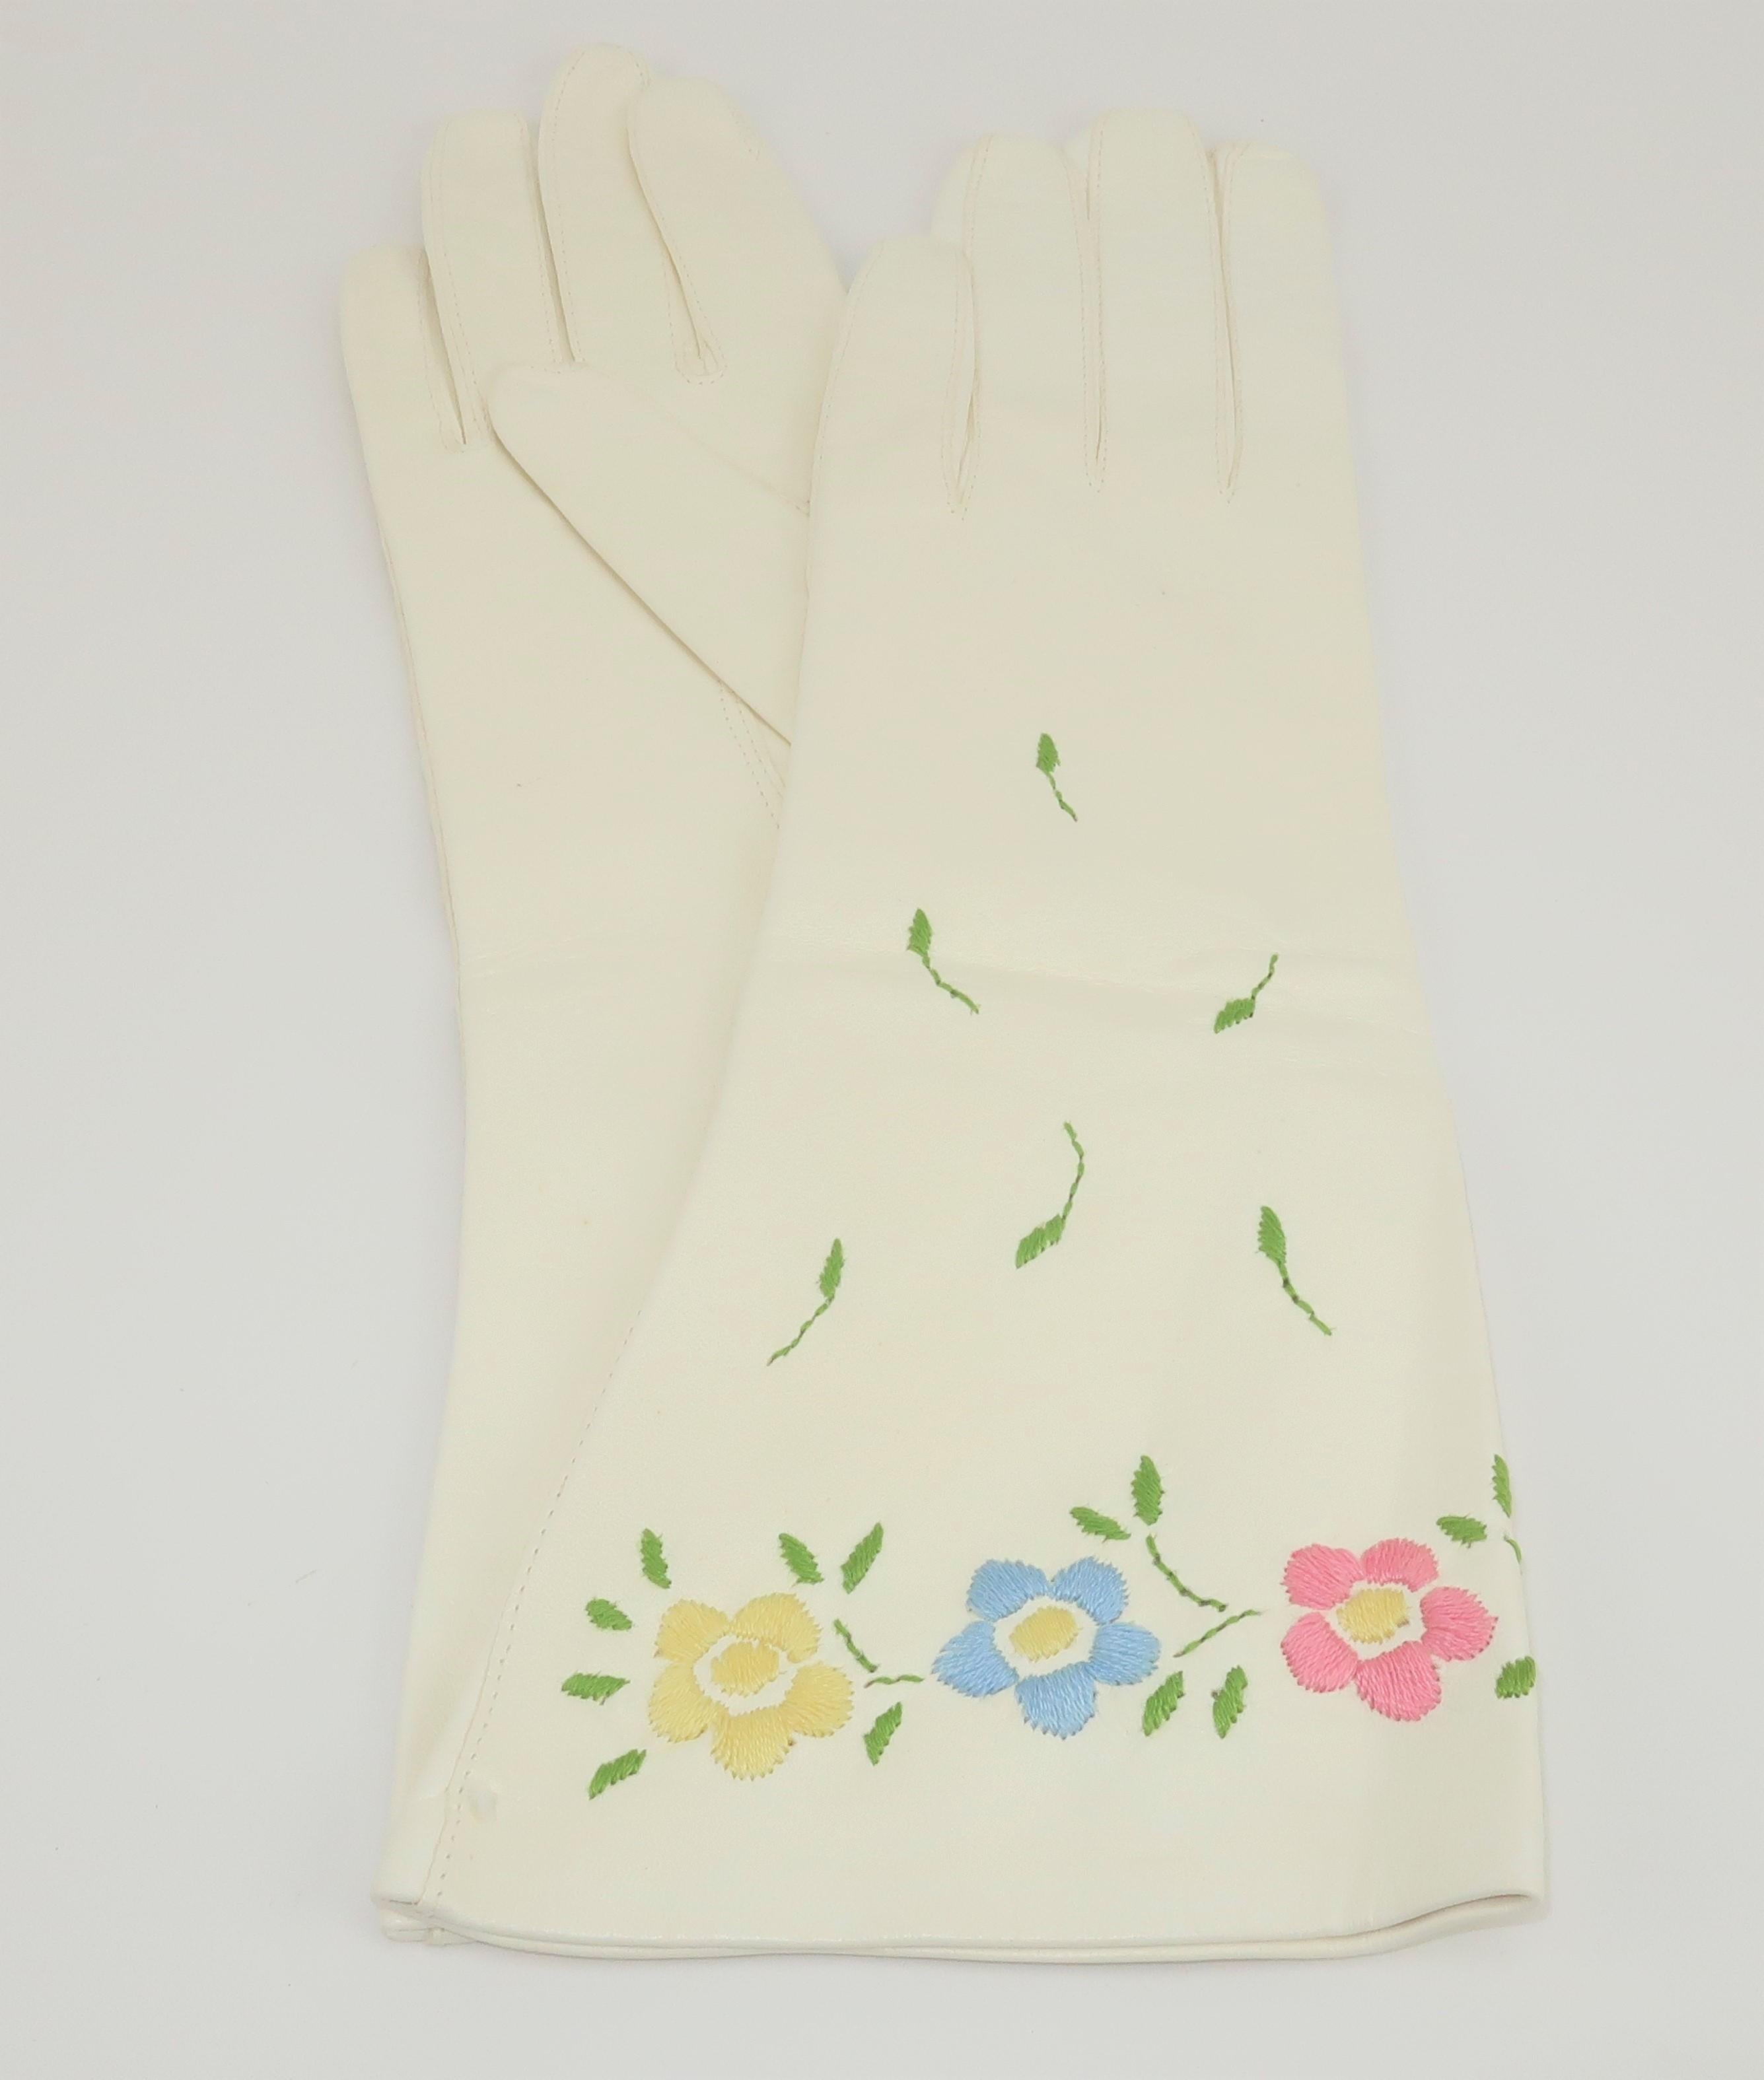 Jolis gants italiens en cuir blanc des années 1950 avec broderie florale pastel dans les tons jaune, bleu, rose et vert.  Les gants ont déjà été possédés mais n'ont jamais été portés. Une couture de fabricant est restée intacte au niveau de la